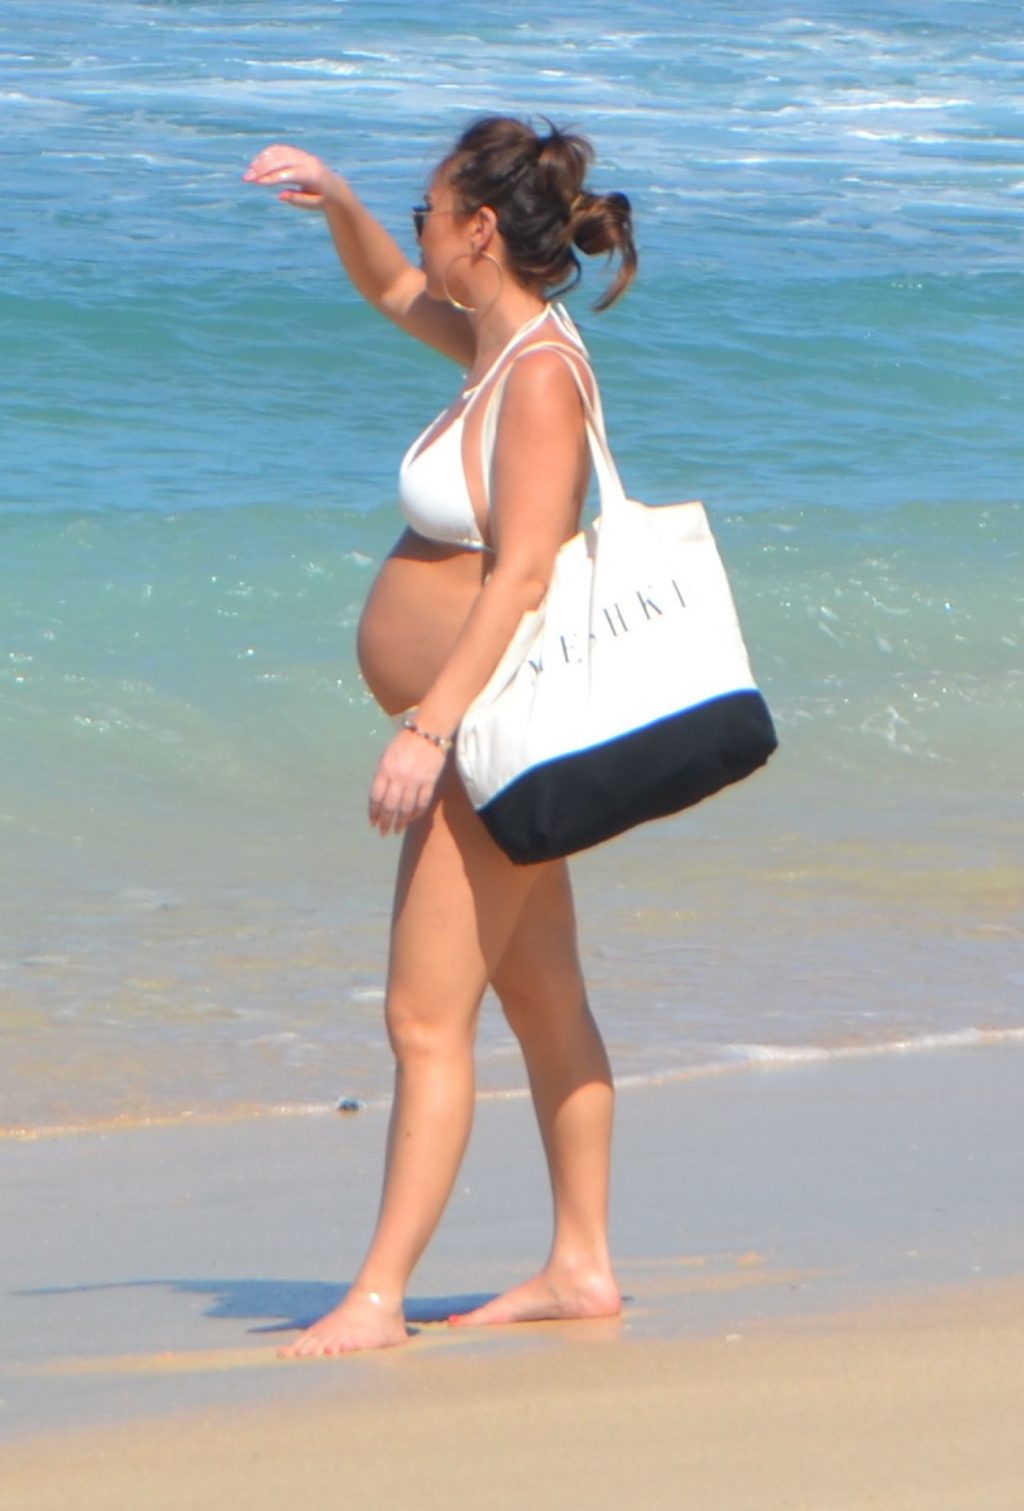 Pregnant Lauryn Goodman is Seen In a Bikini On The Beach (8 Photos)